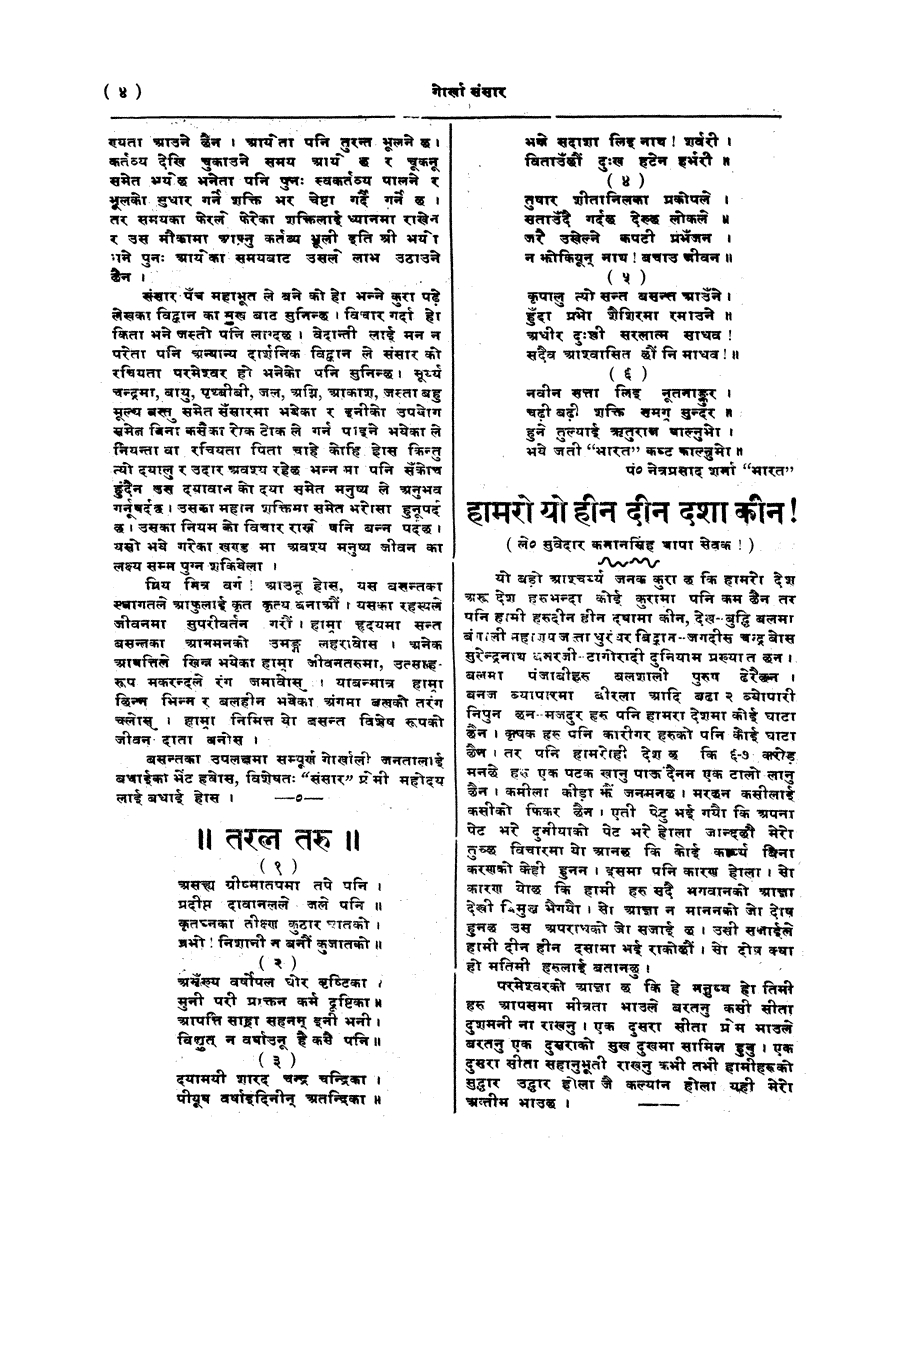 Gorkha Sansar, 31 Jan 1928, page 4